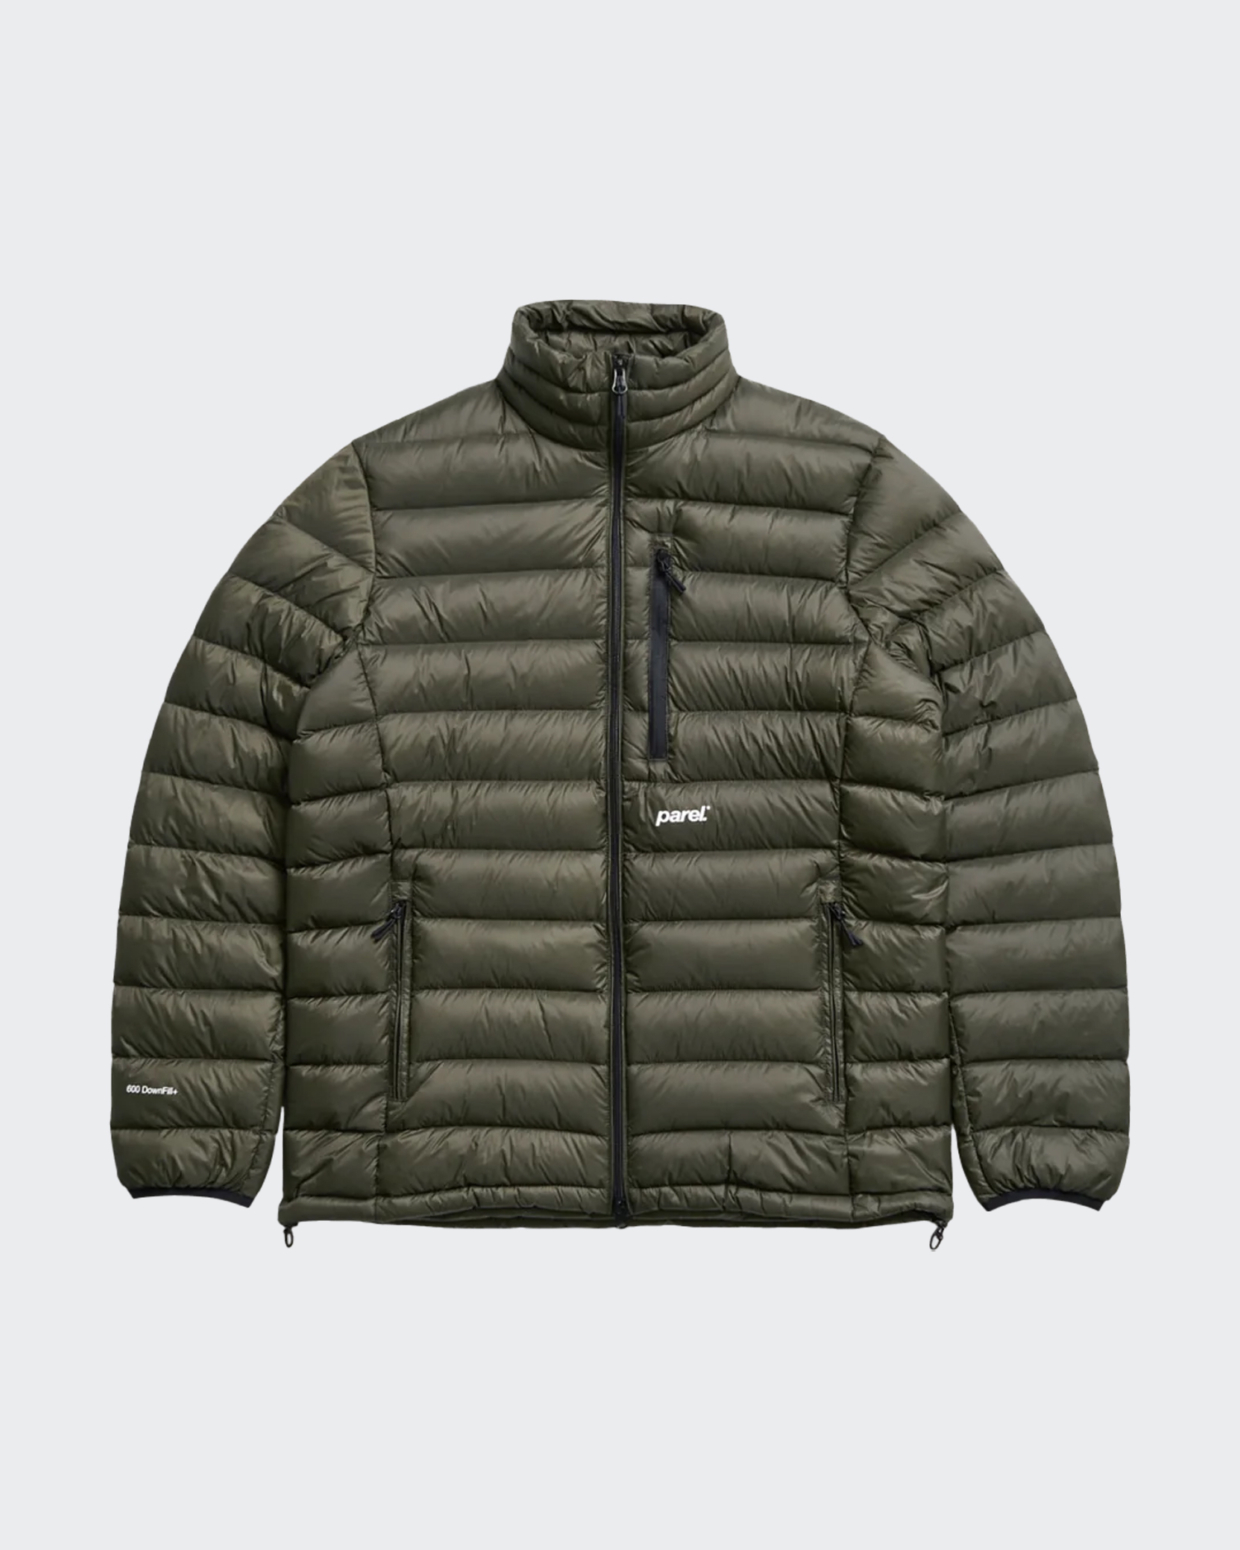 Parel Sierra Down jacket